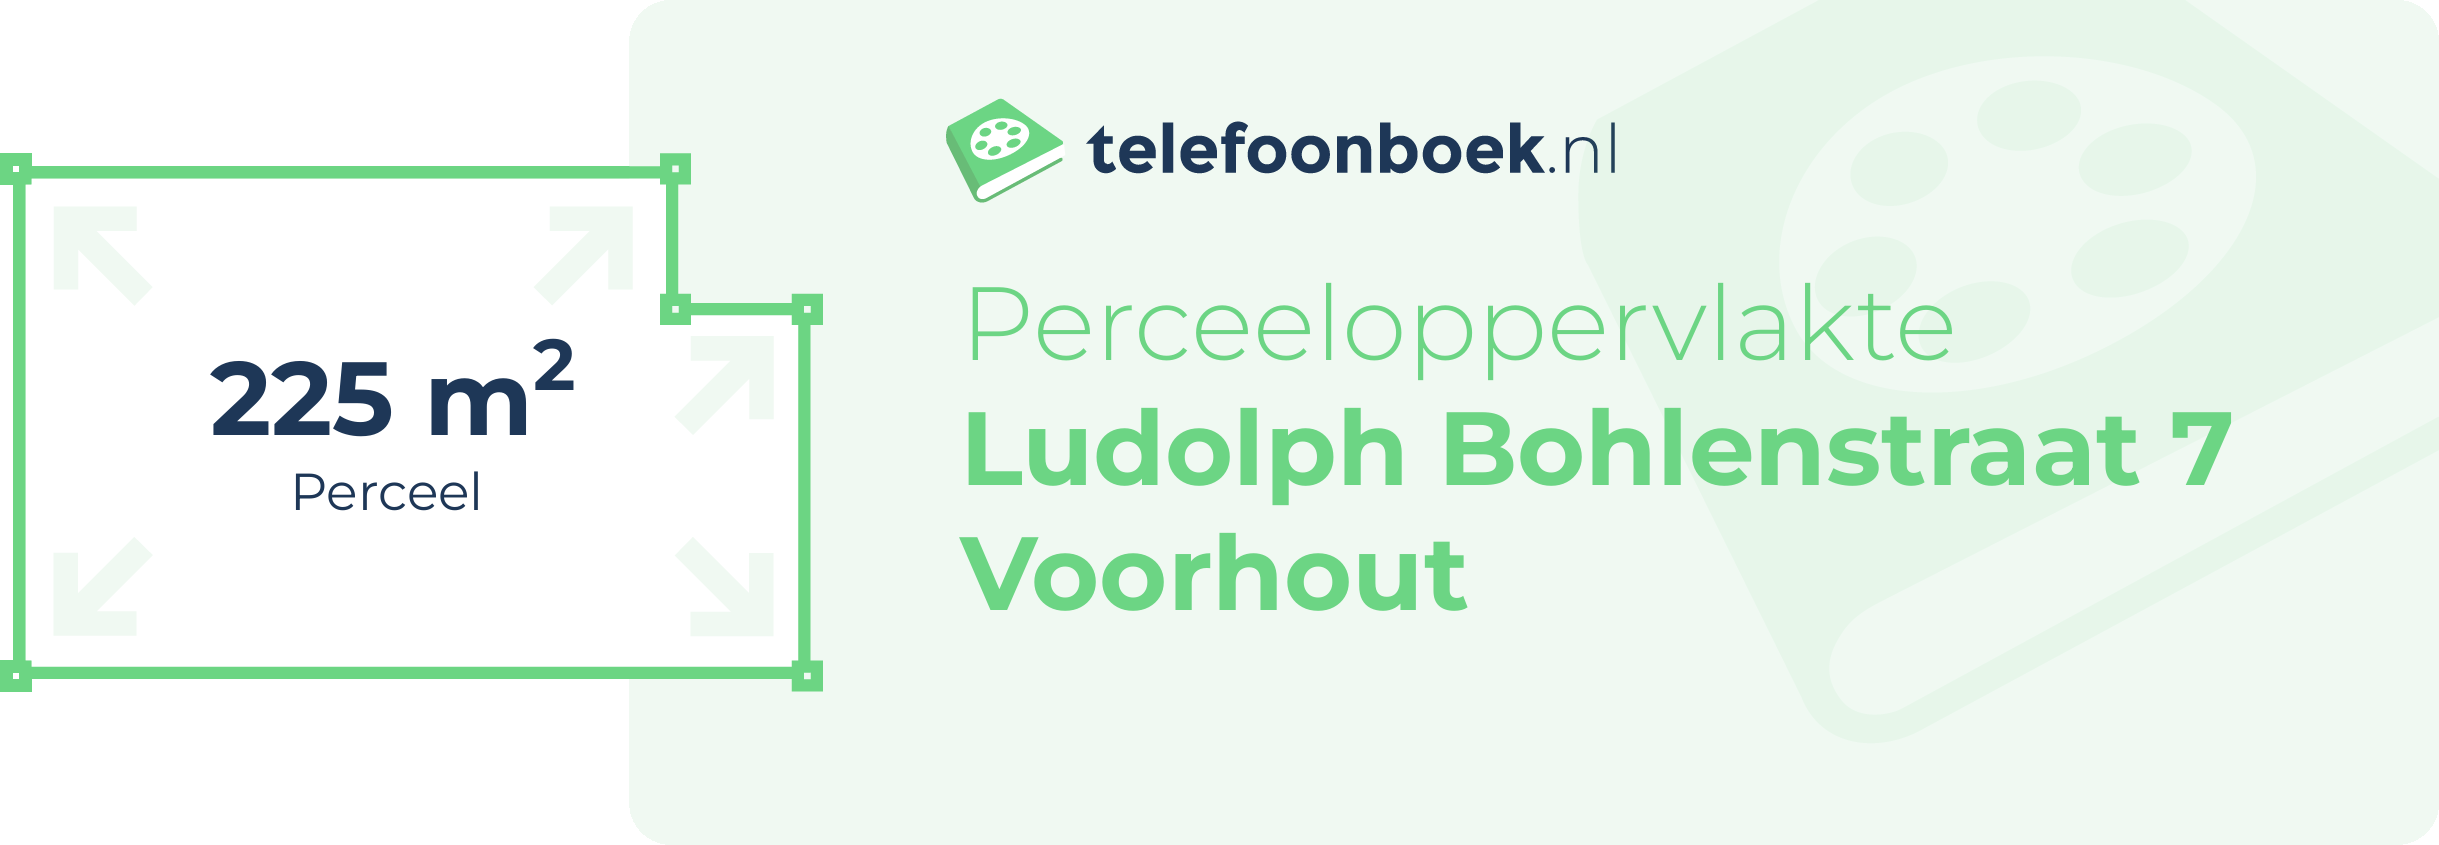 Perceeloppervlakte Ludolph Bohlenstraat 7 Voorhout